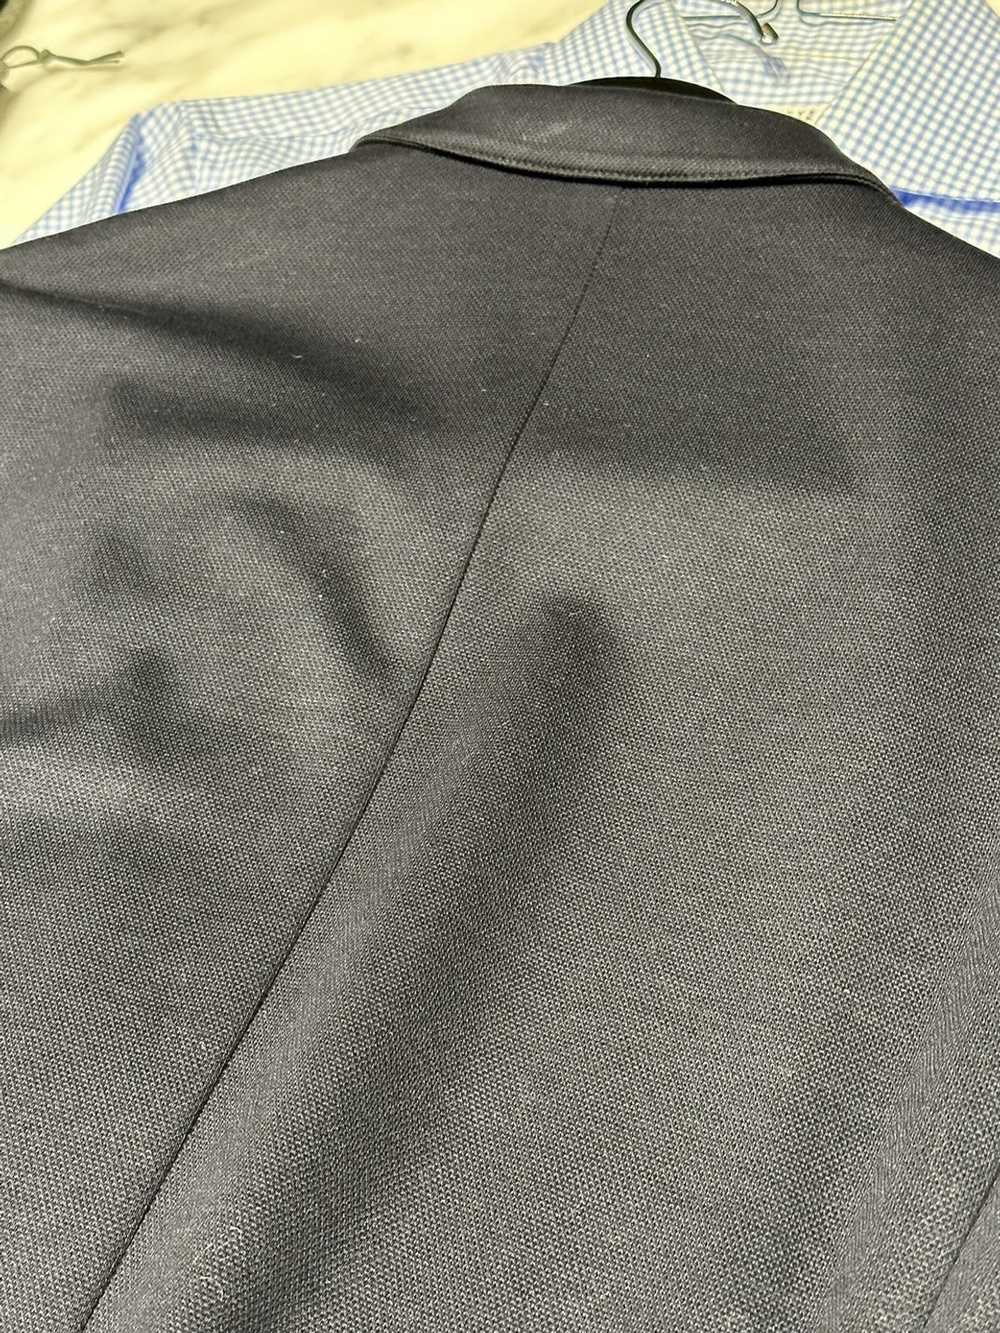 Brioni Brioni dark blue wool luxury tailored suit… - image 12